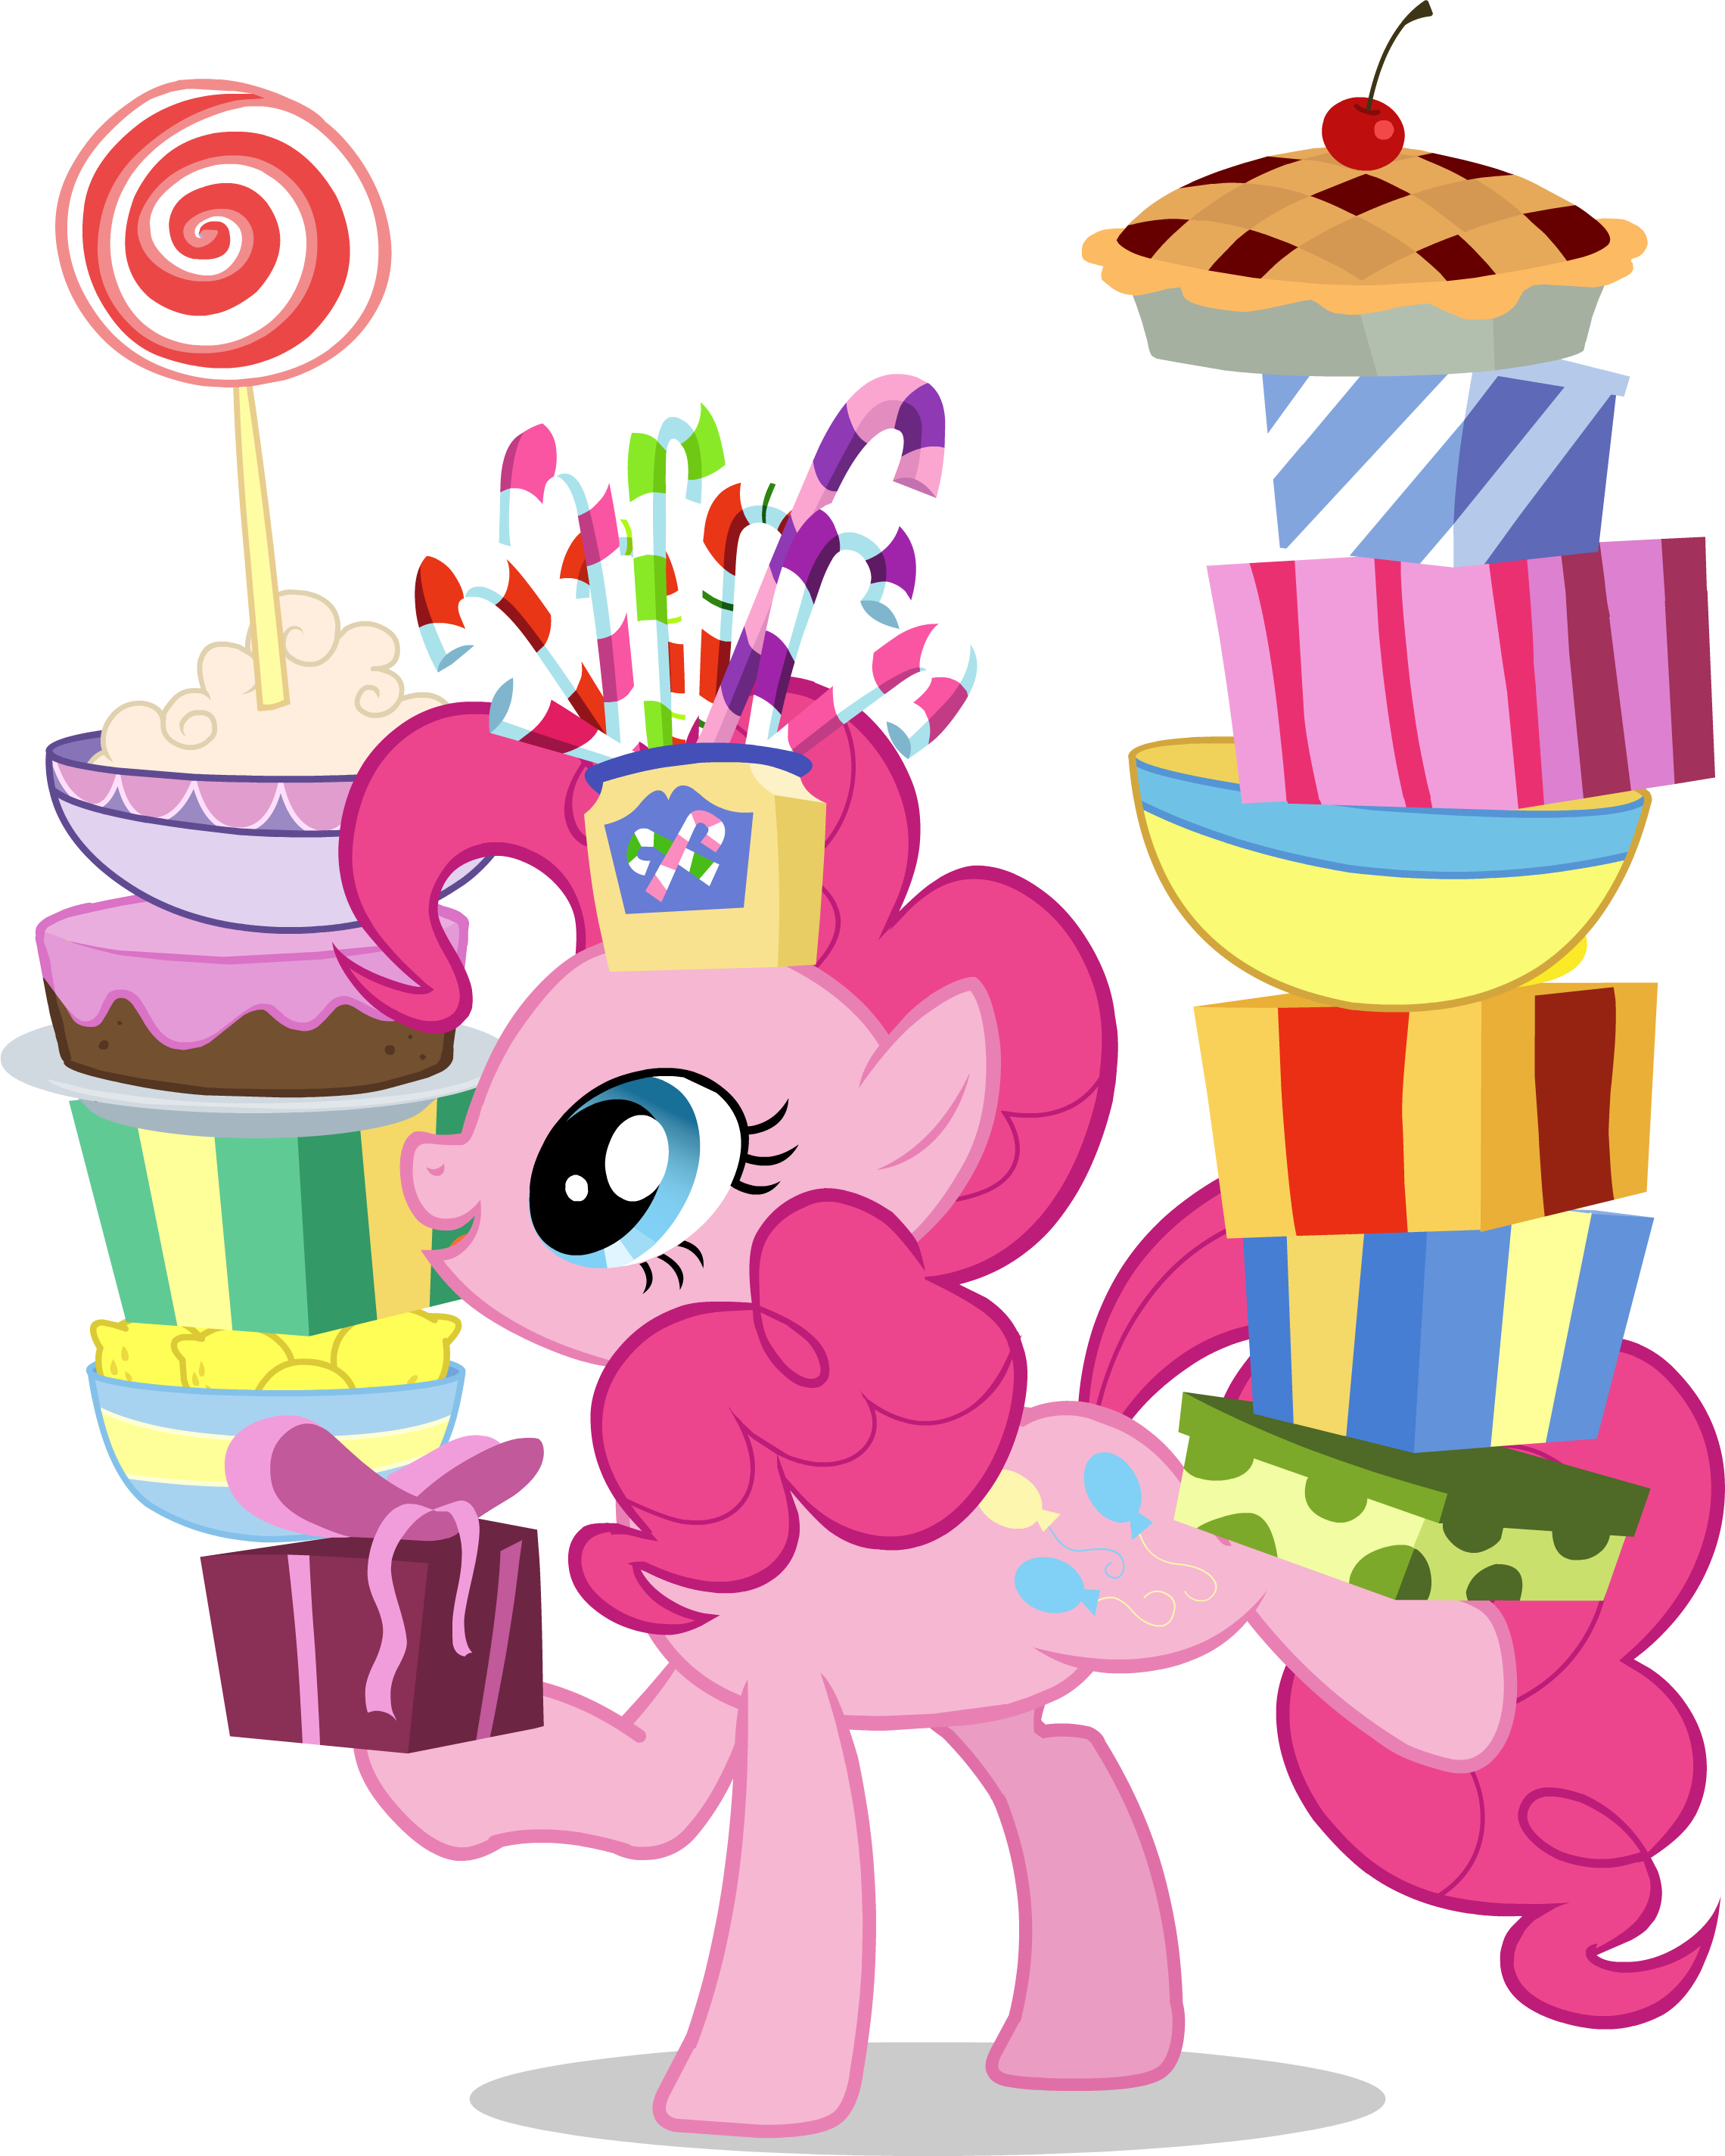 Май литл пони день рождения. My little Pony с днем рождения. My little Pony день рождения Пинки Пай. Единорог Пинки Пай. Тортик Пинки Пай.